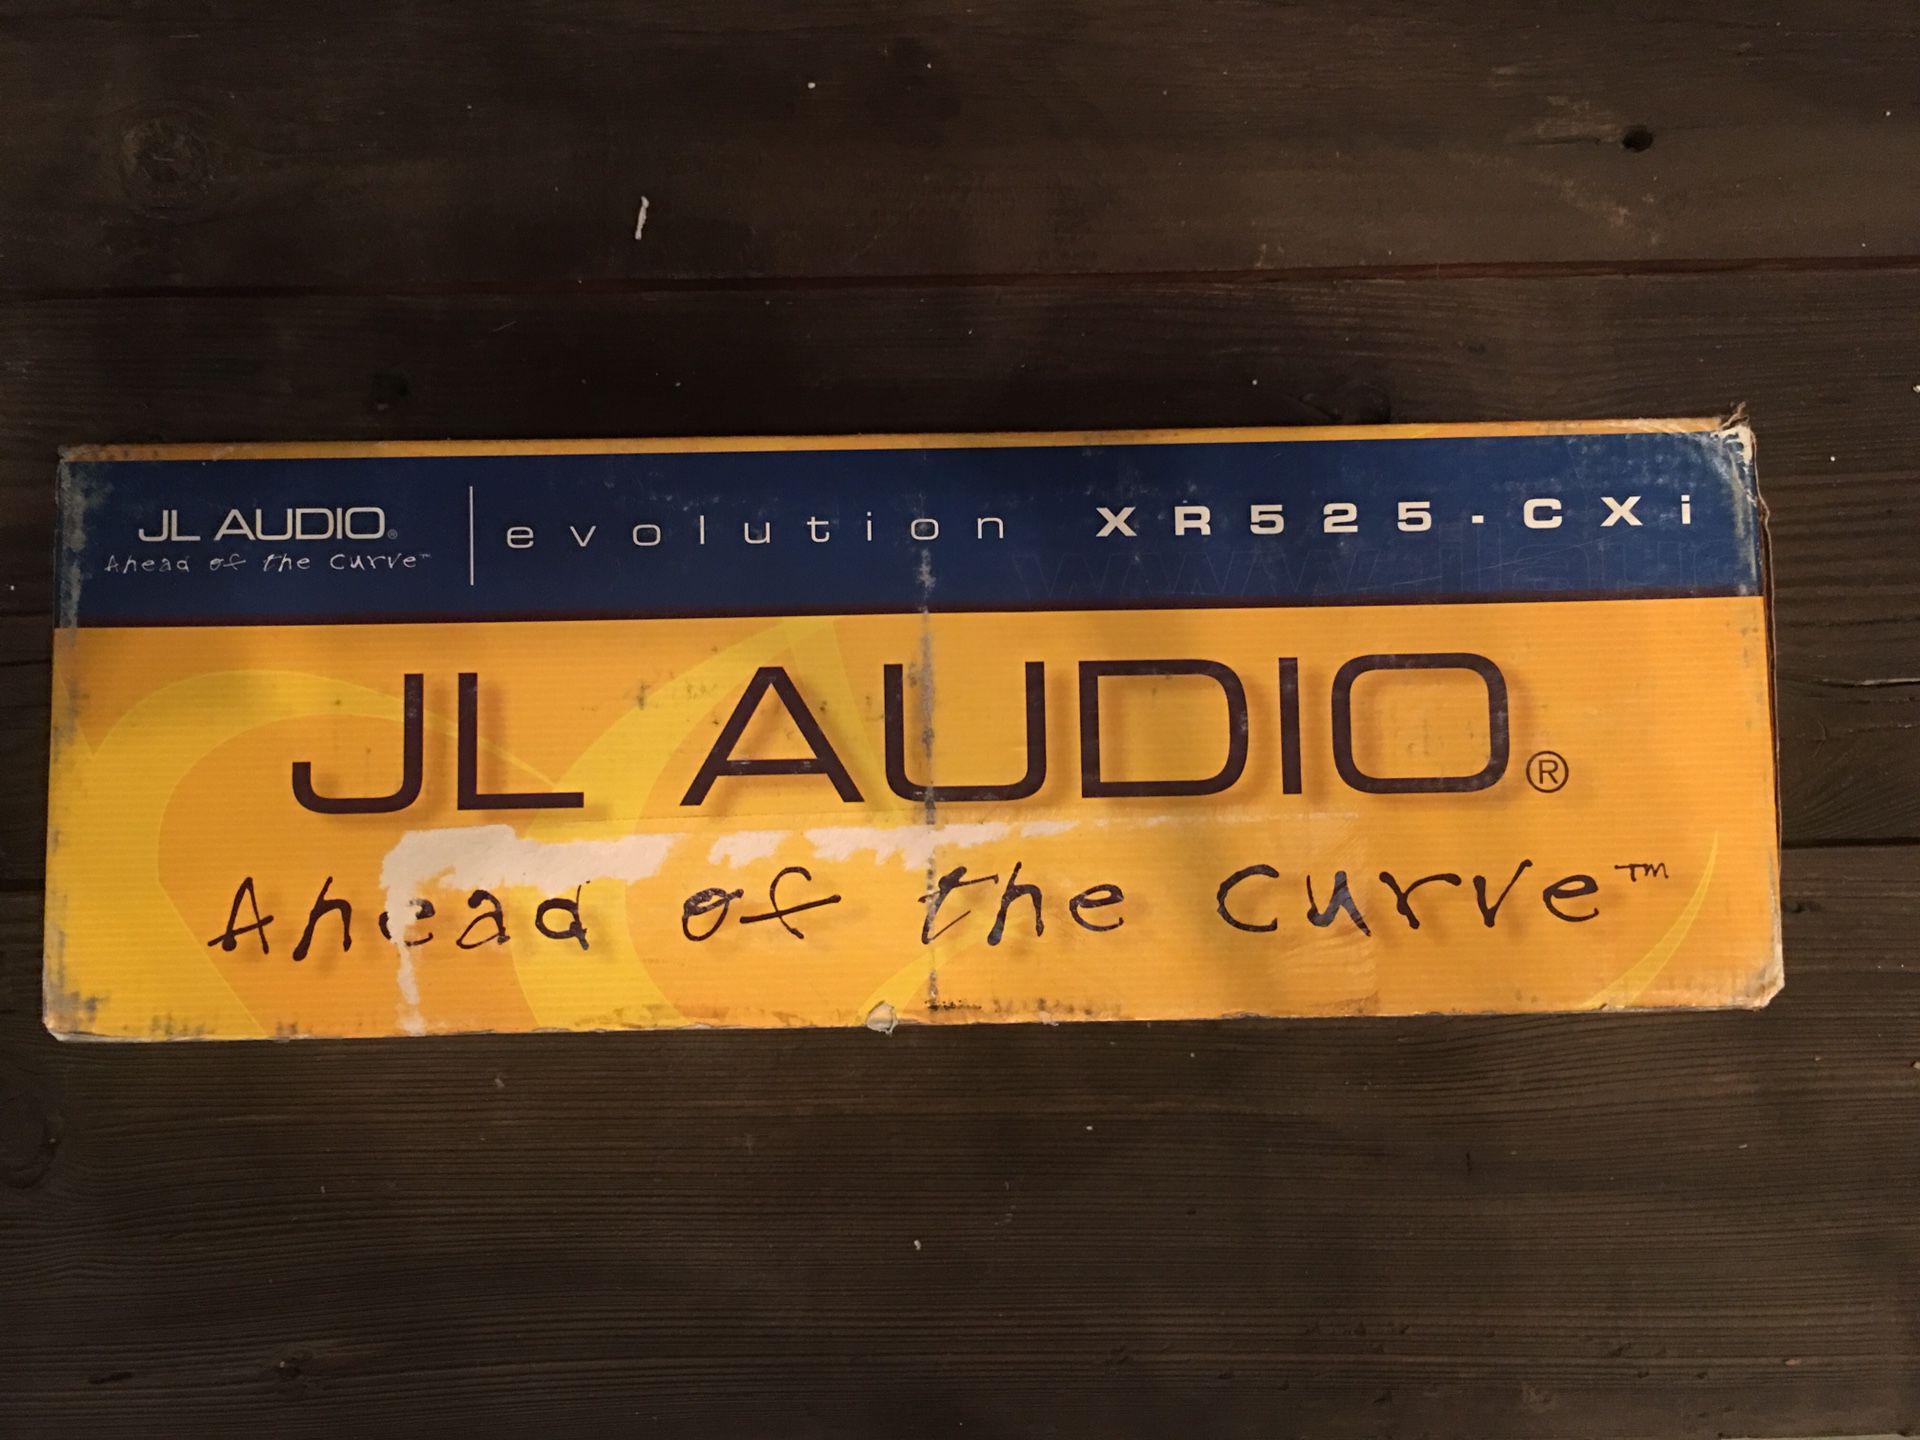 New JL Audio XR525 CXI speakers